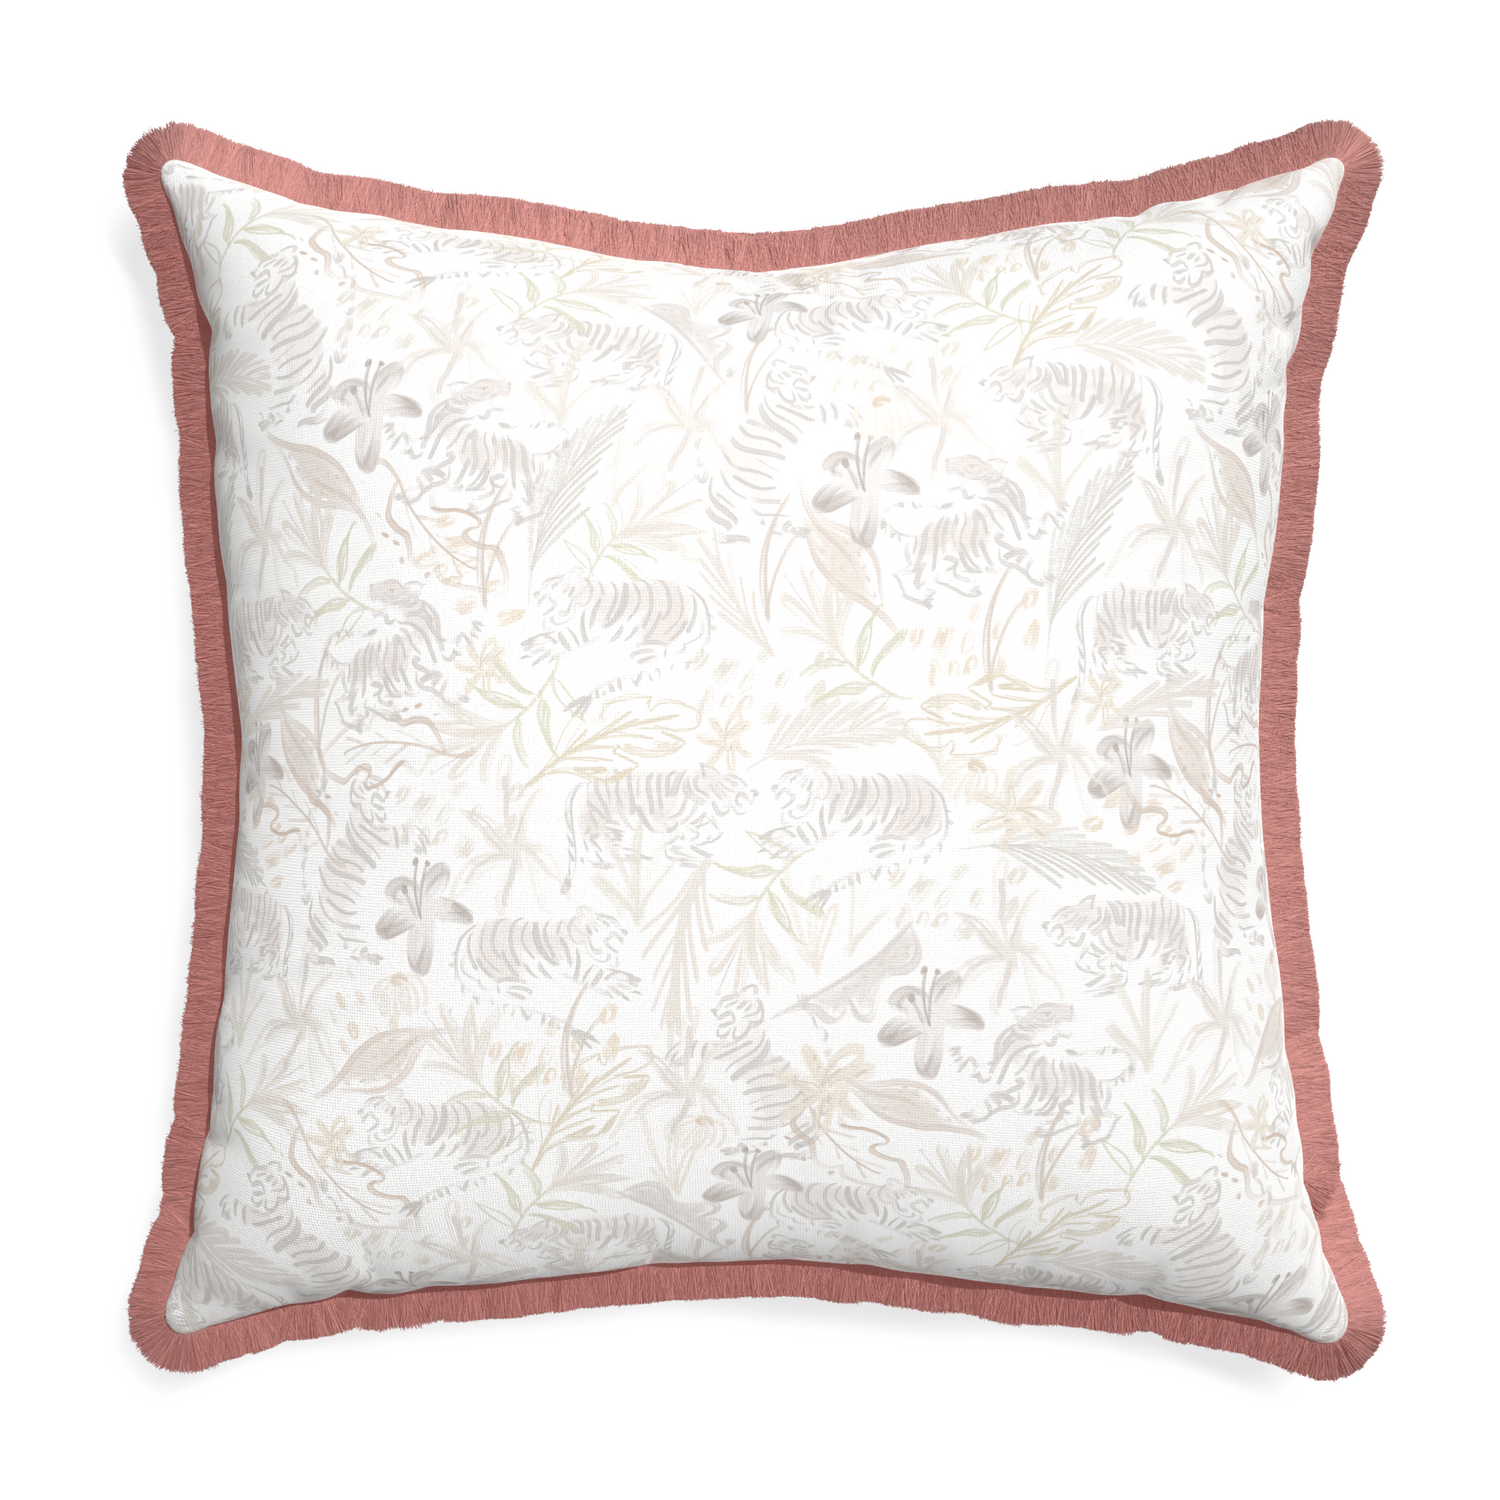 Euro-sham frida sand custom pillow with d fringe on white background